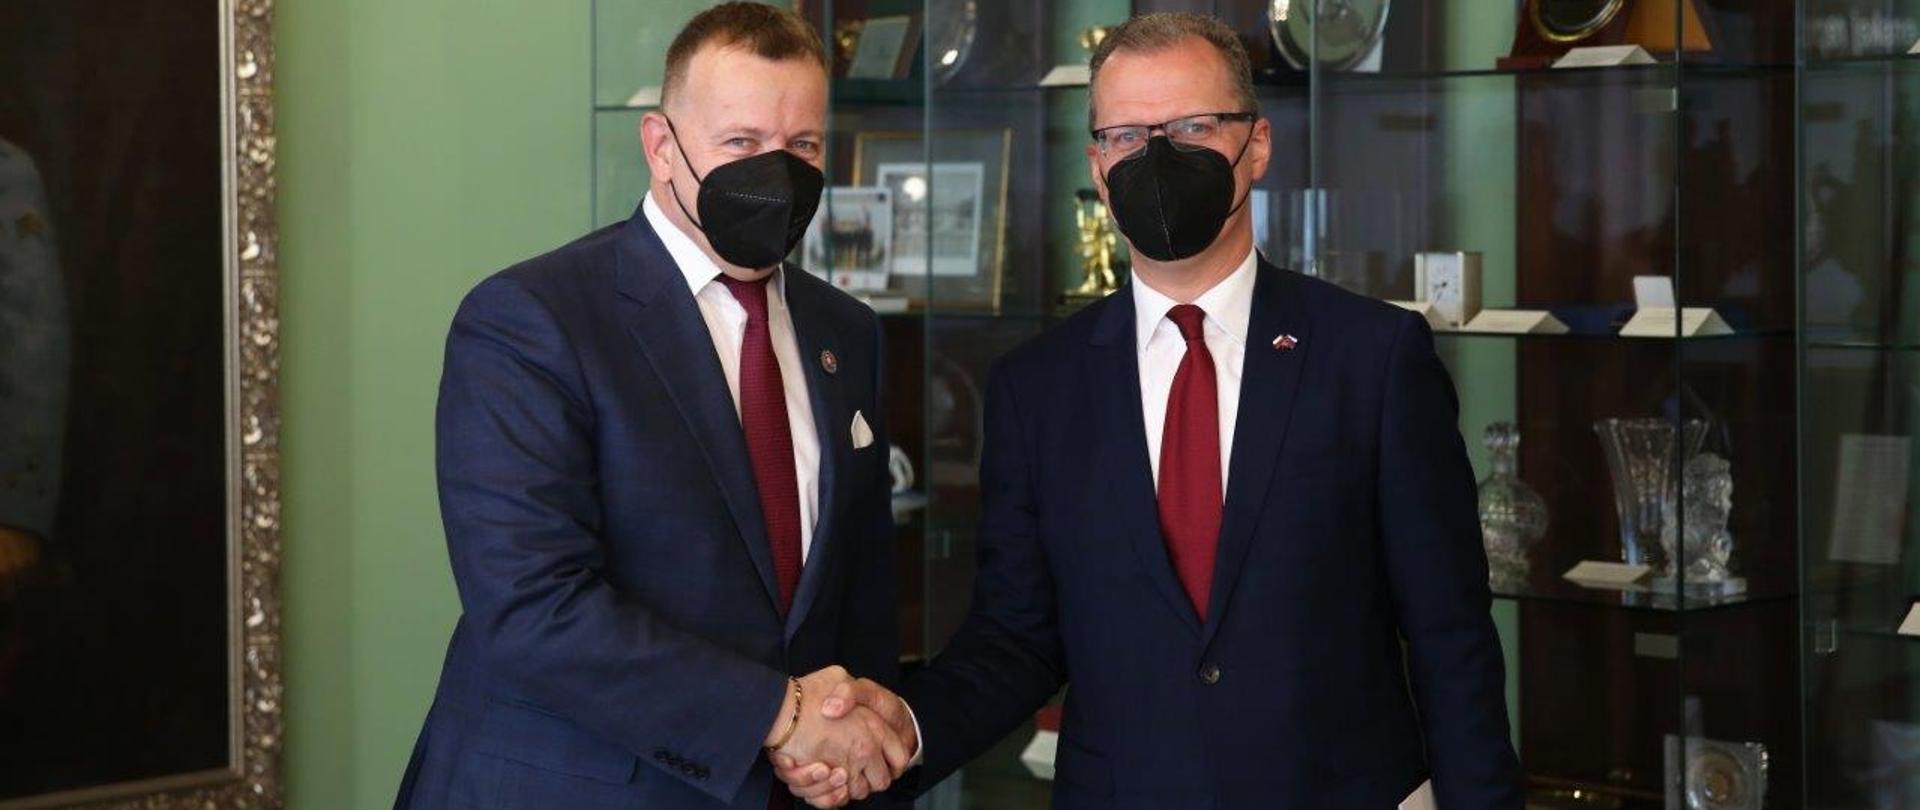 Uściska dłoni ambasadora Krzysztofa Strzałki i przewodniczącego Rady Narodowej Słowacji Borisa Kollára